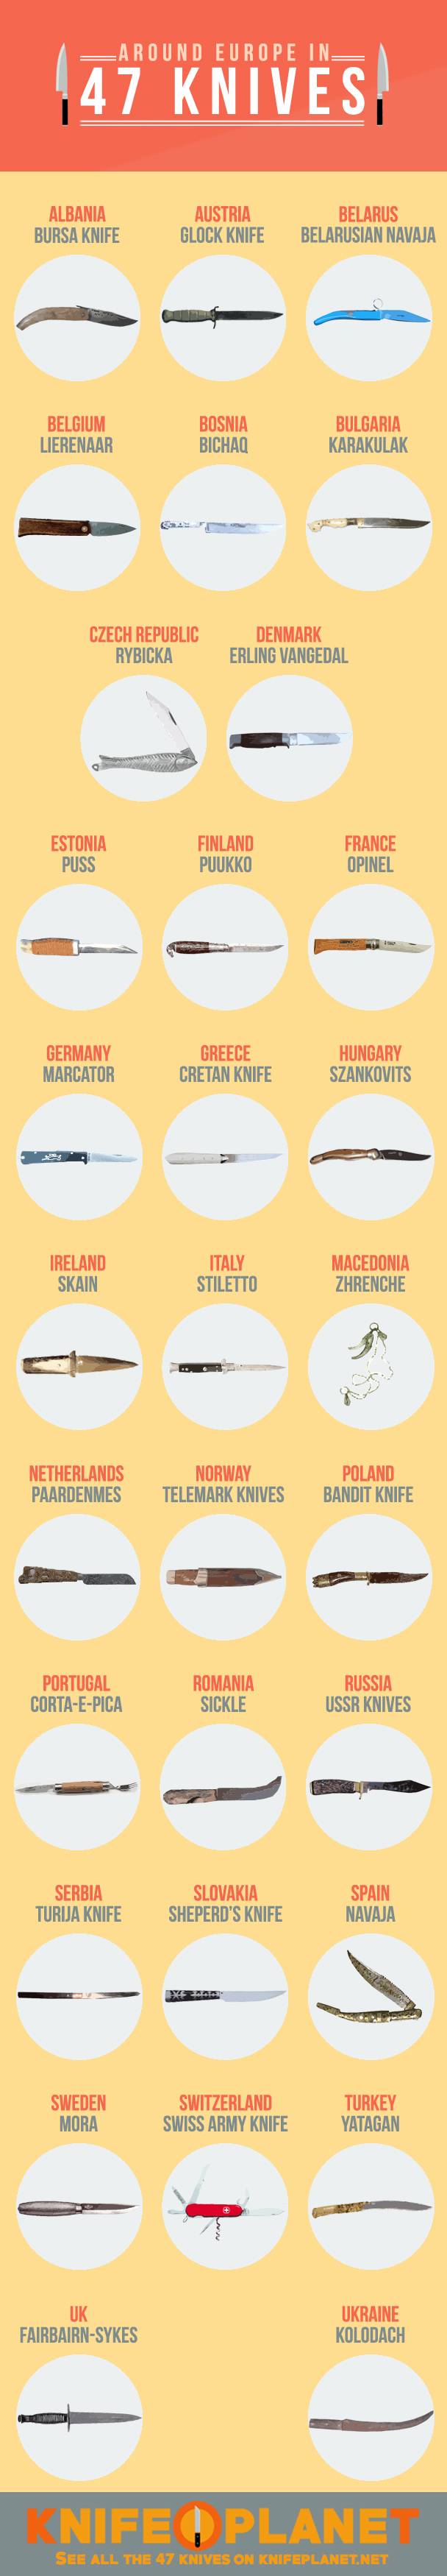 knives-europe-infographics.jpg